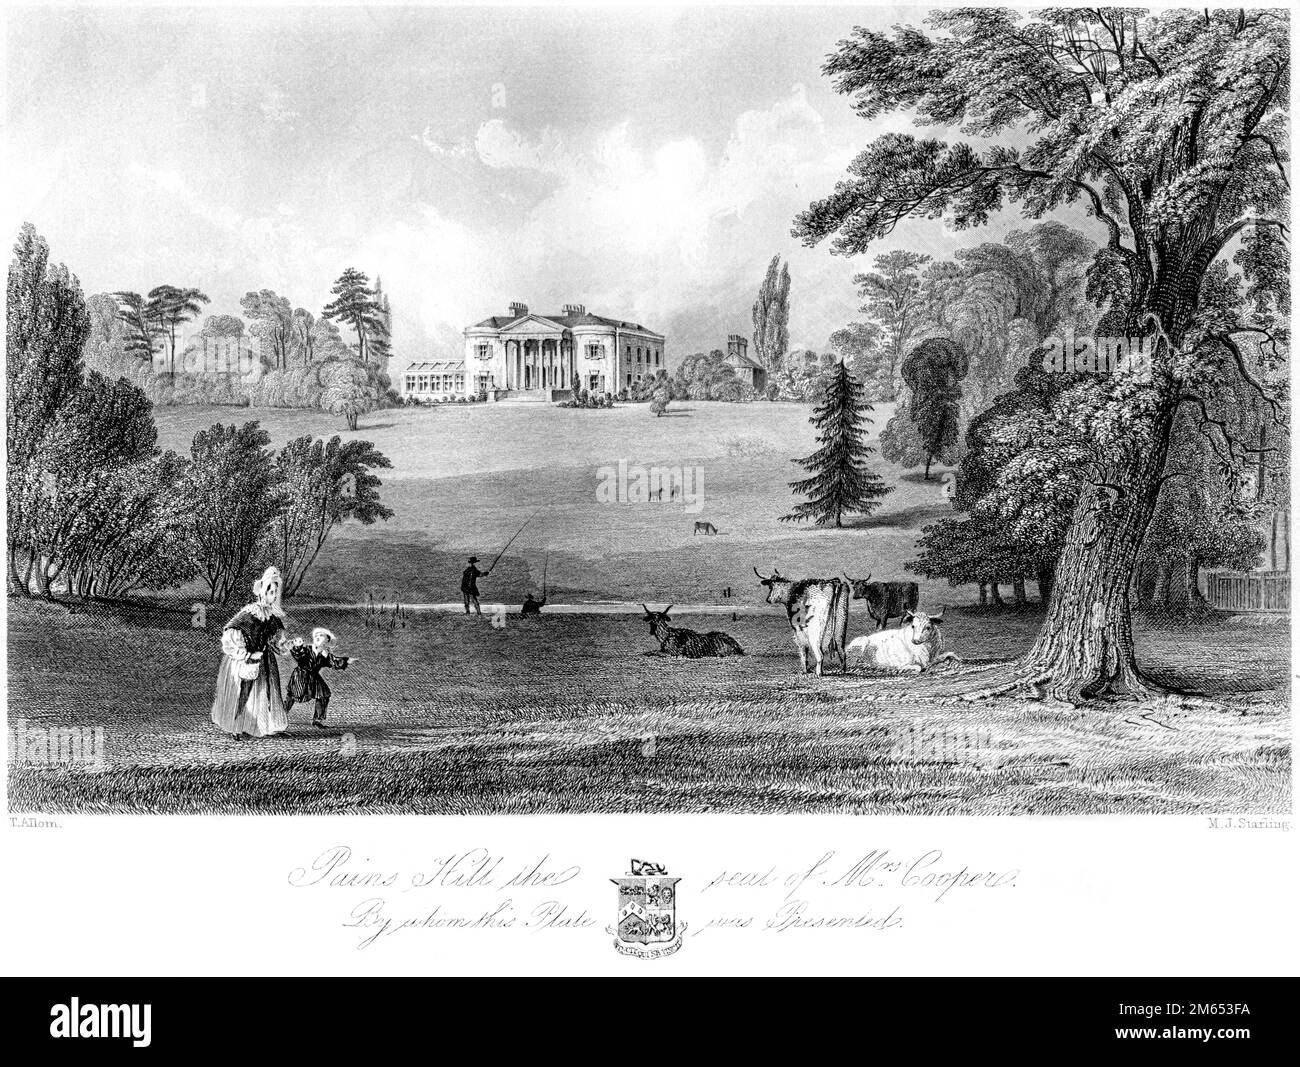 Eine Gravur von Pains Hill The Seat of Mrs. Cooper (Painshill) scannte Surrey in hoher Auflösung aus einem 1850 gedruckten Buch. Glaubte, dass es keine Urheberrechte gibt Stockfoto